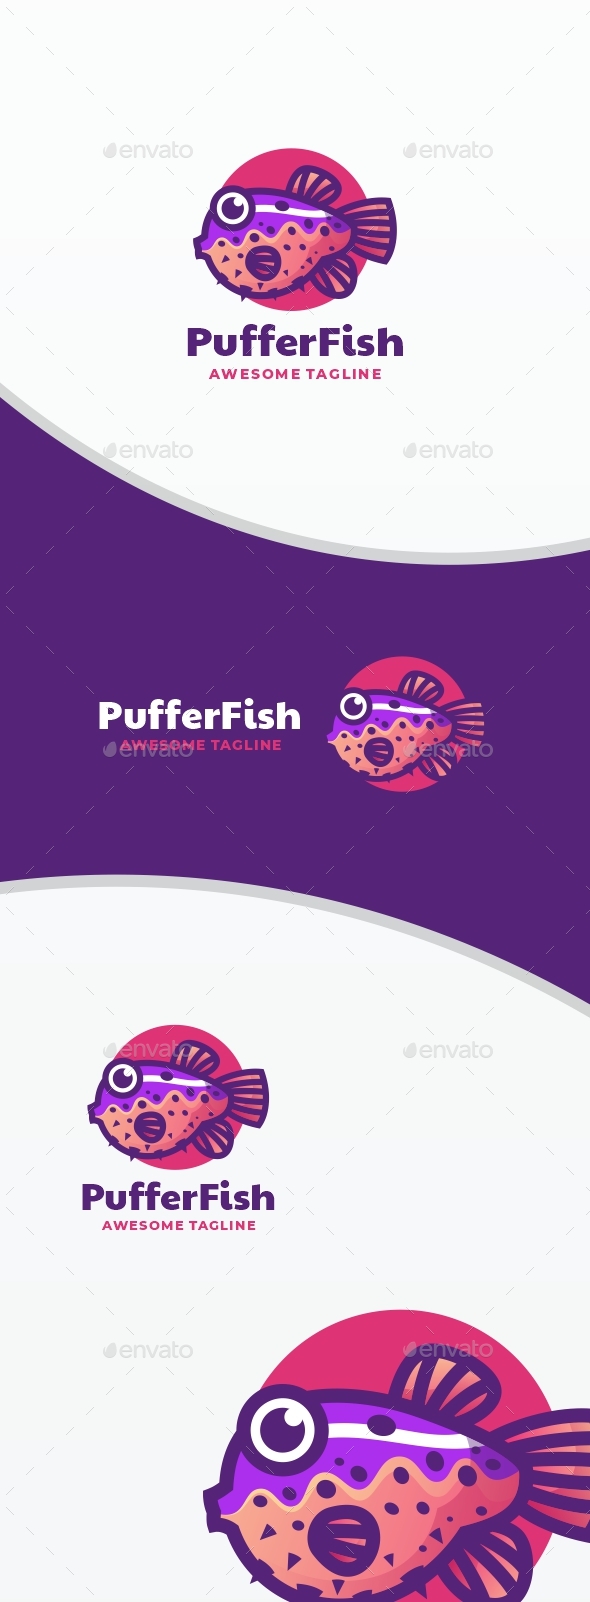 [DOWNLOAD]Puffer Fish Simple Mascot Logo Template